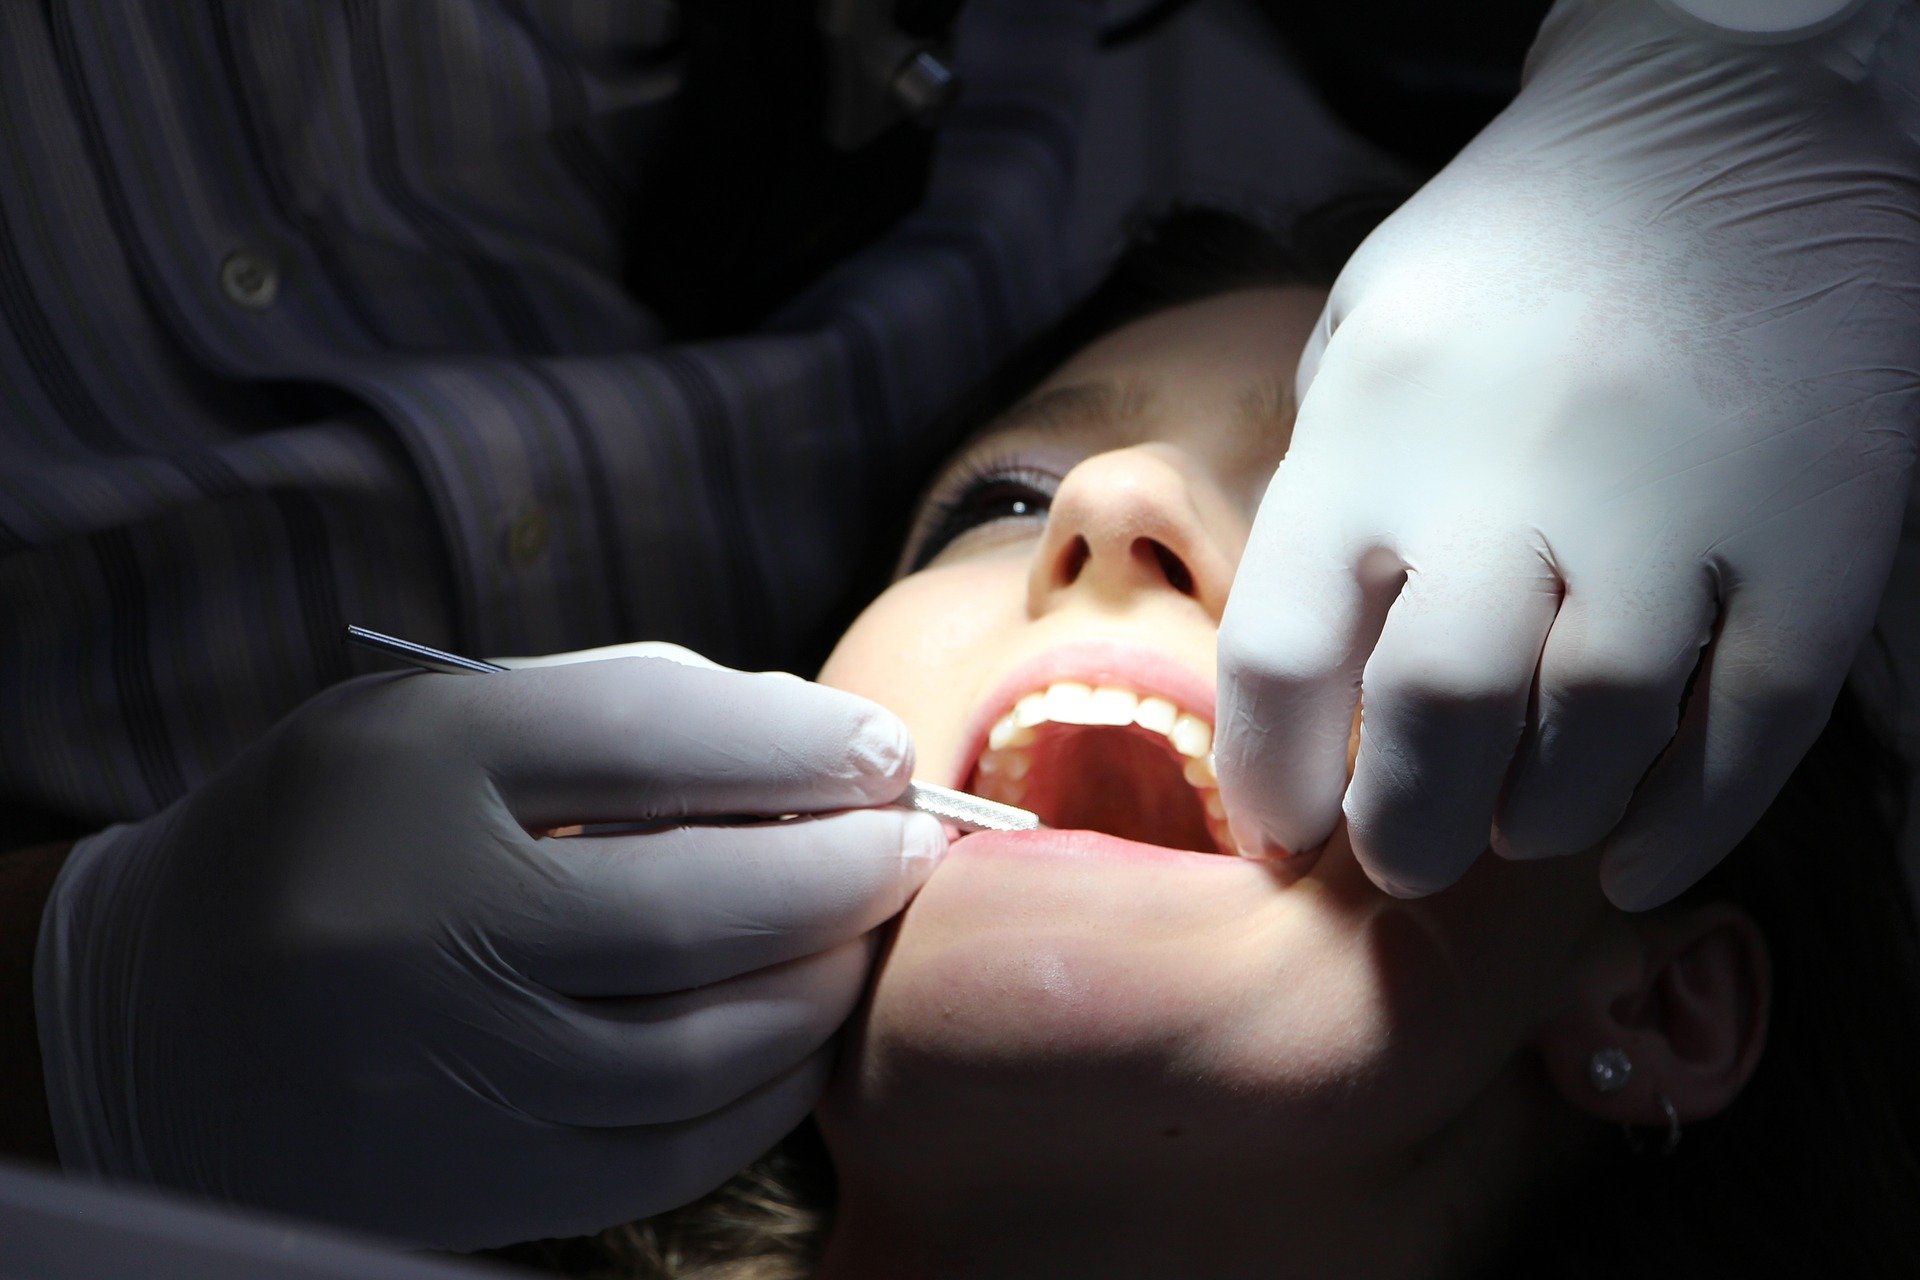 Barcelona tindrà un servei de dentista municipal a preus socials